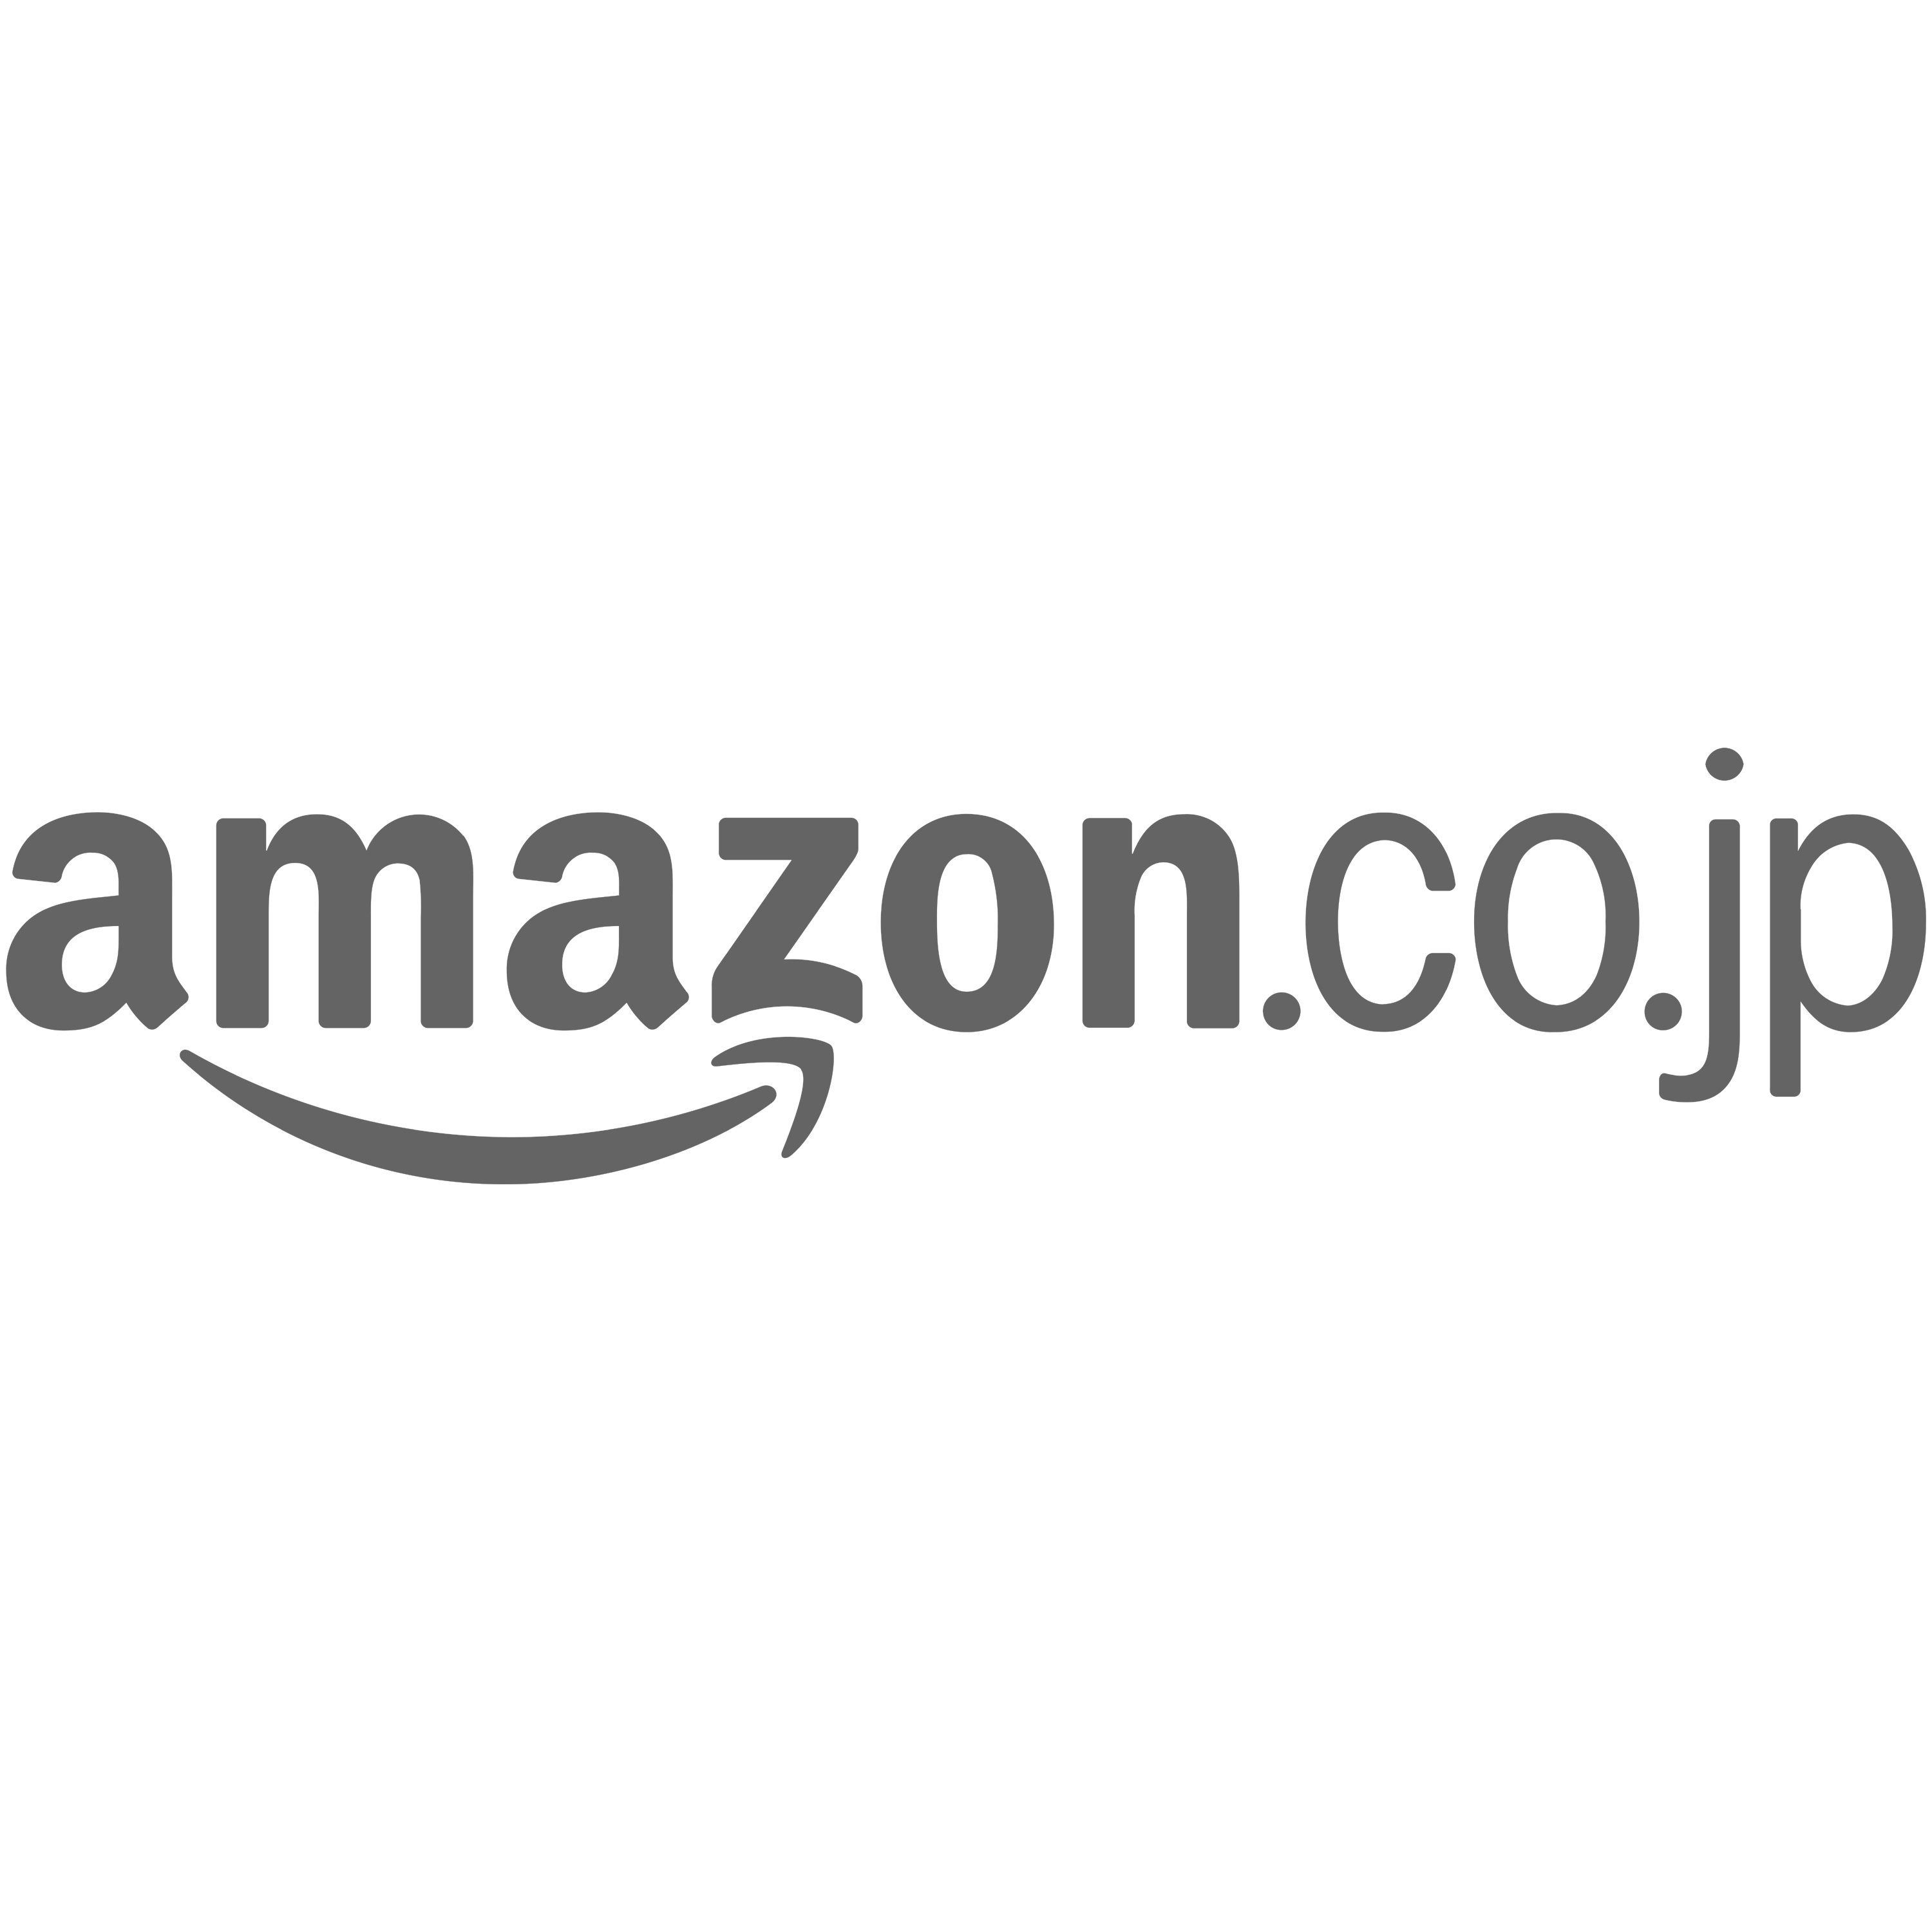 Amazon.co.jp Logo Transparent Picture